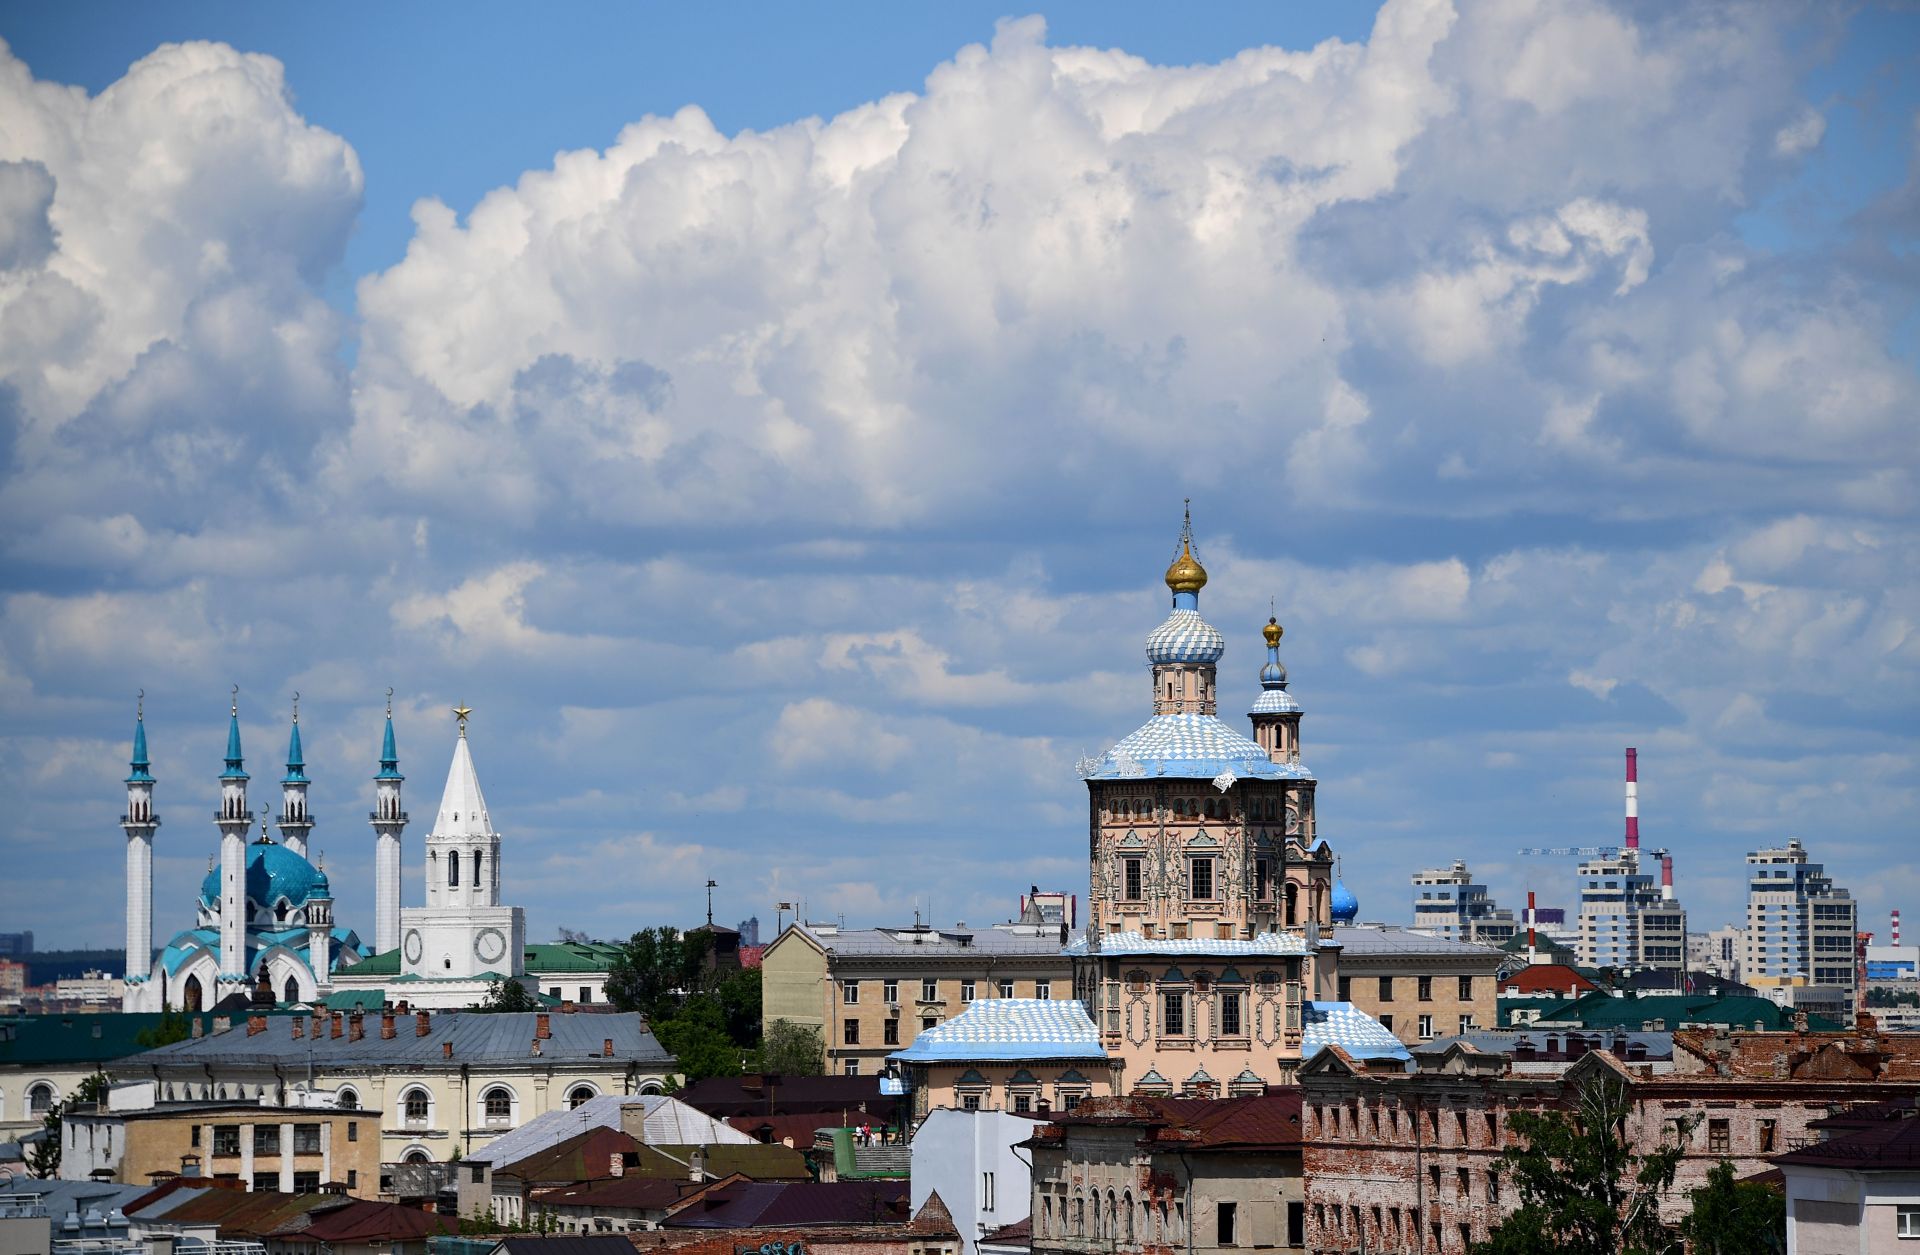 Kazan is the capital of the Republic of Tatarstan in Russia.